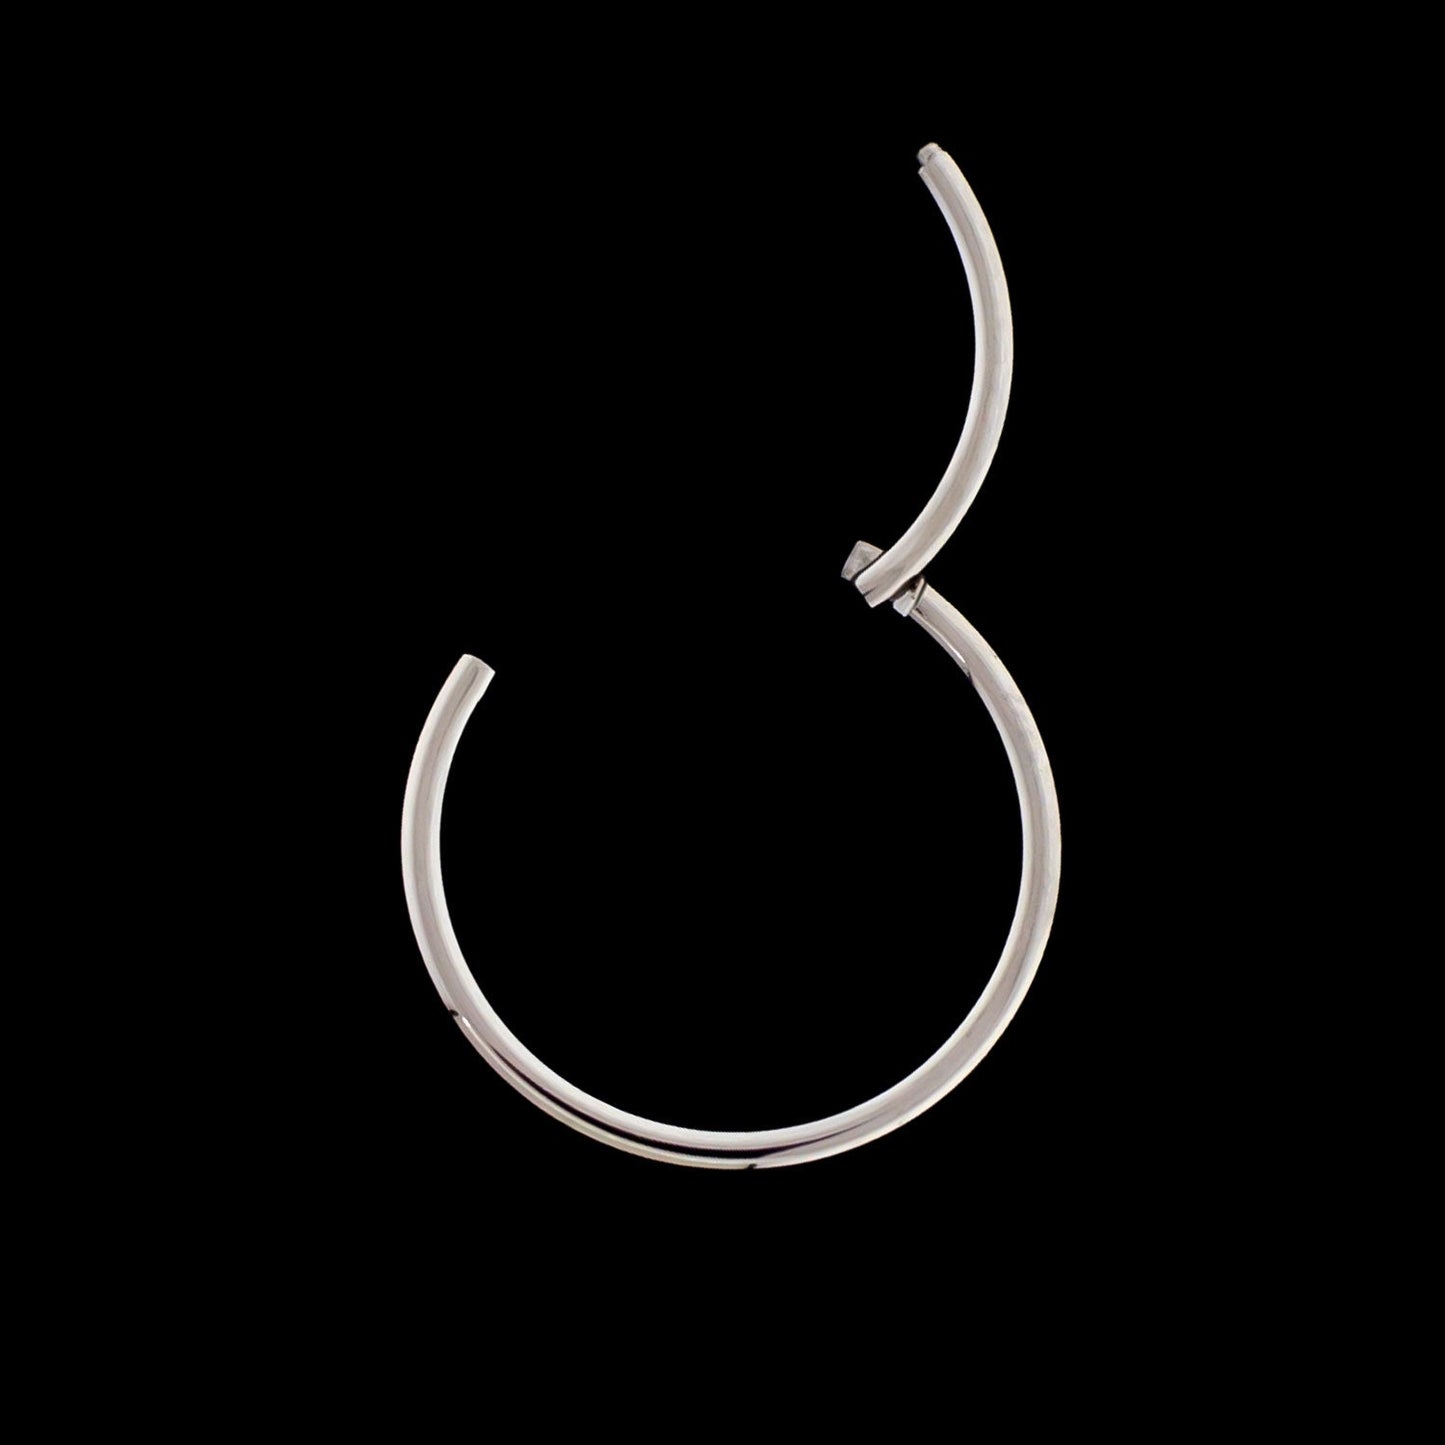 16G Hinged Segment Ring - Khrysos Jewelry